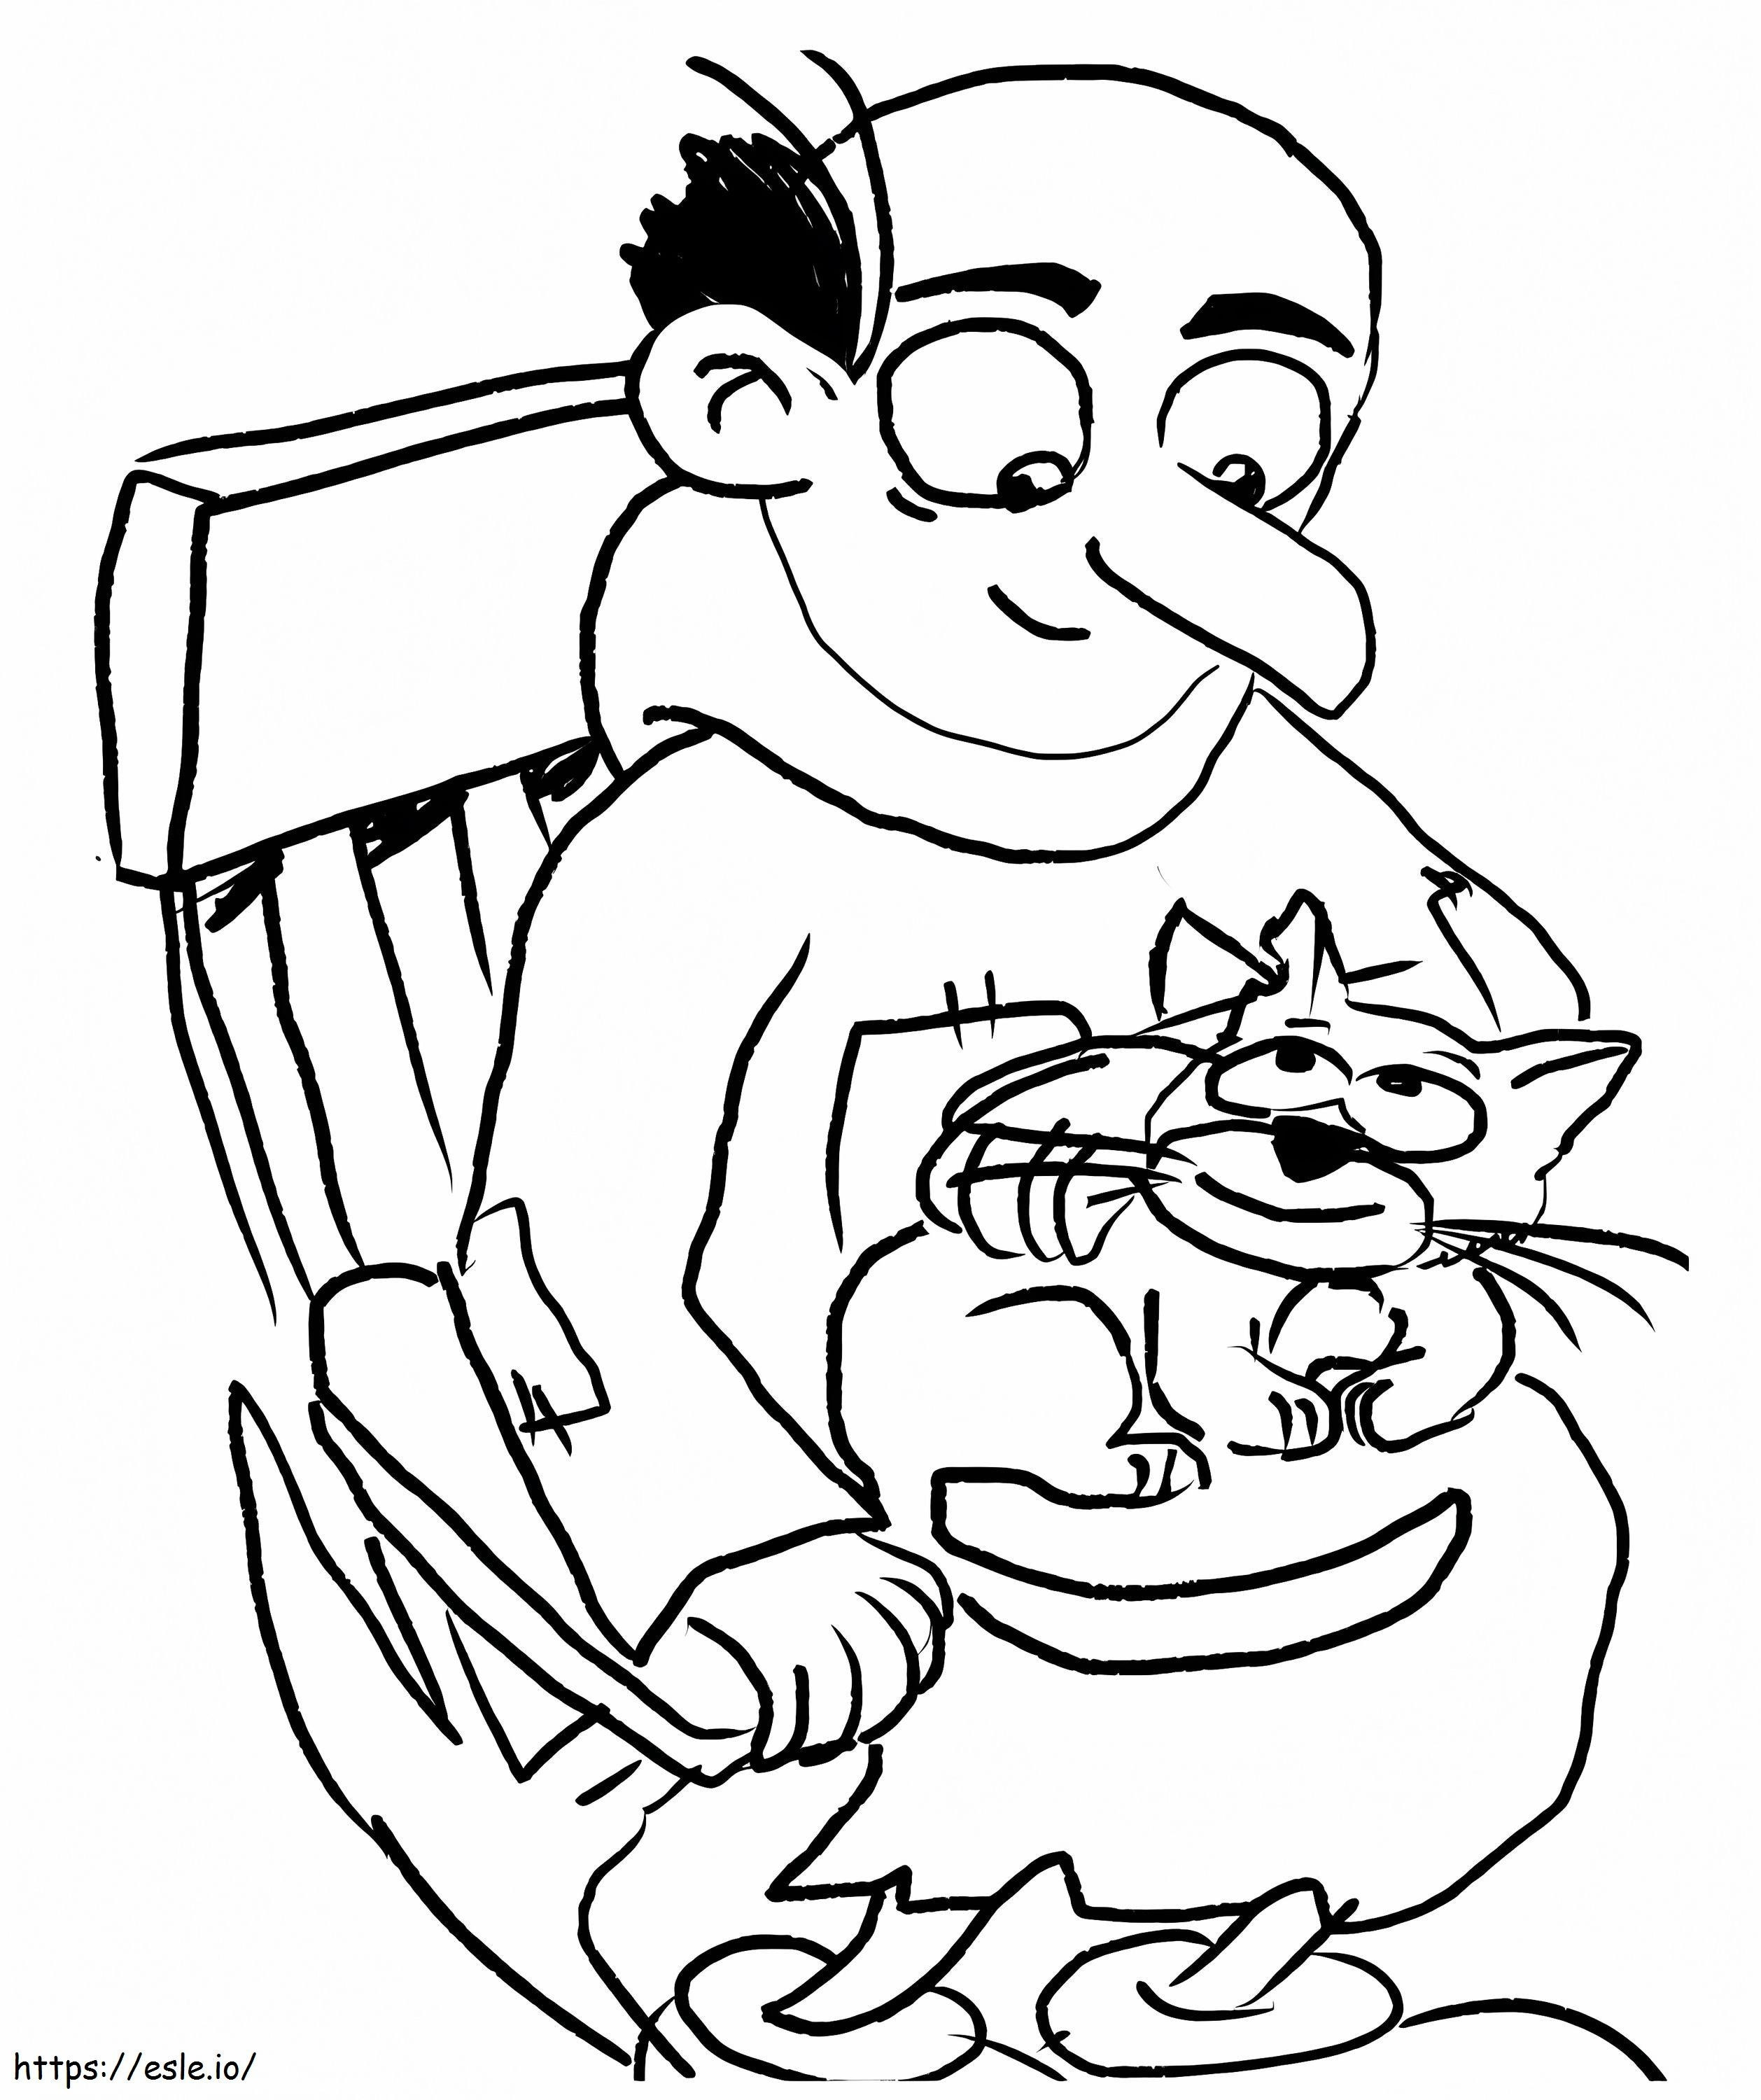 Gargamel mit seiner Katze ausmalbilder